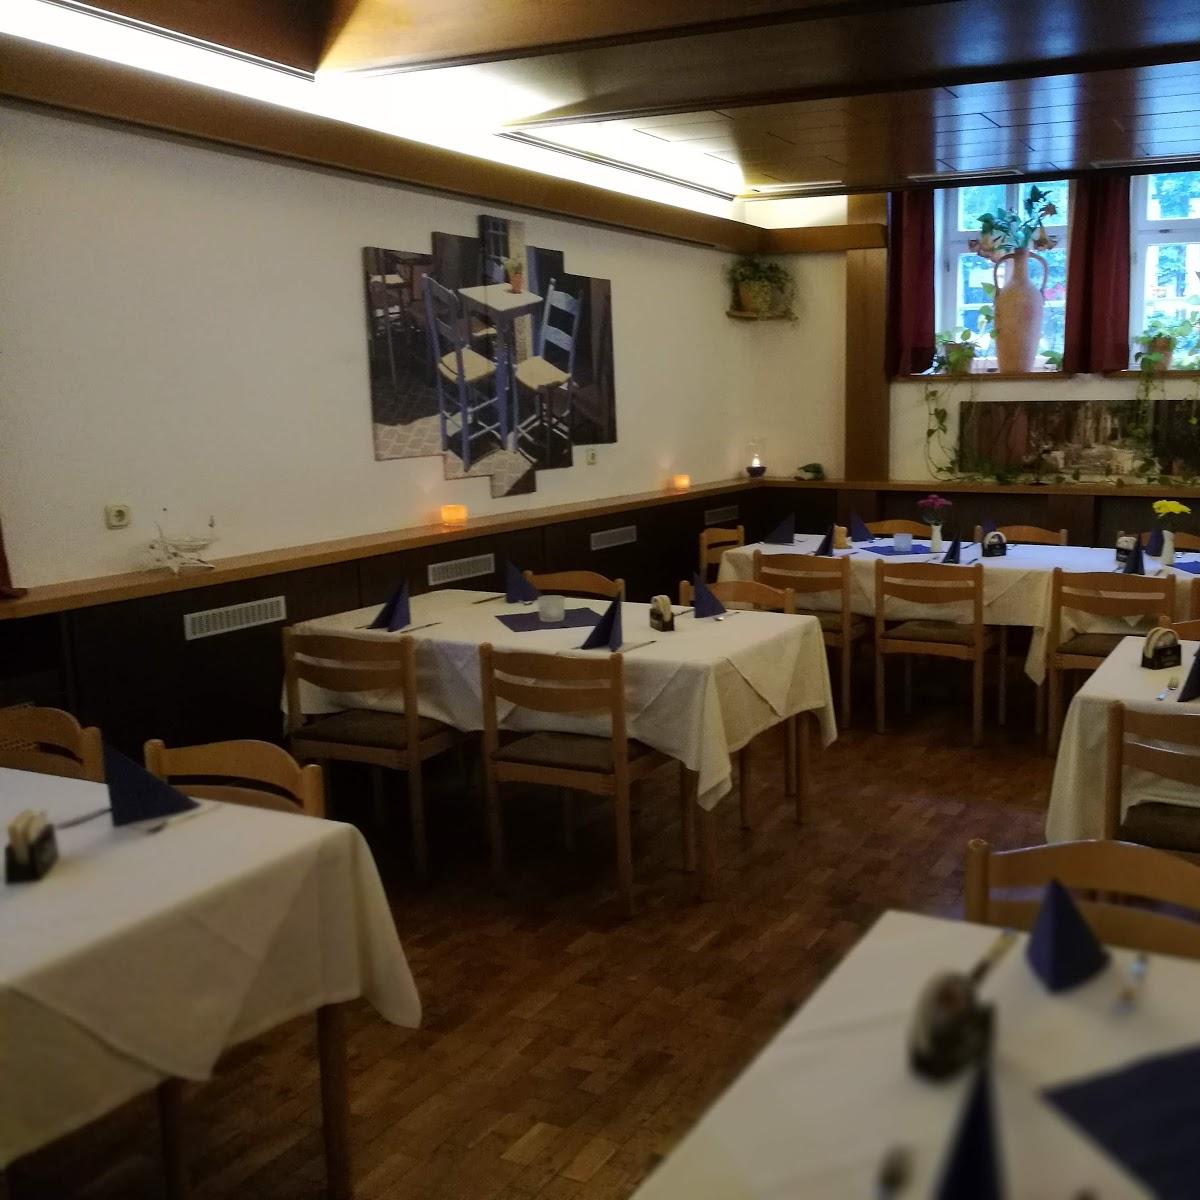 Restaurant "DER GRIECHE im Ratskeller" in  Immenhausen